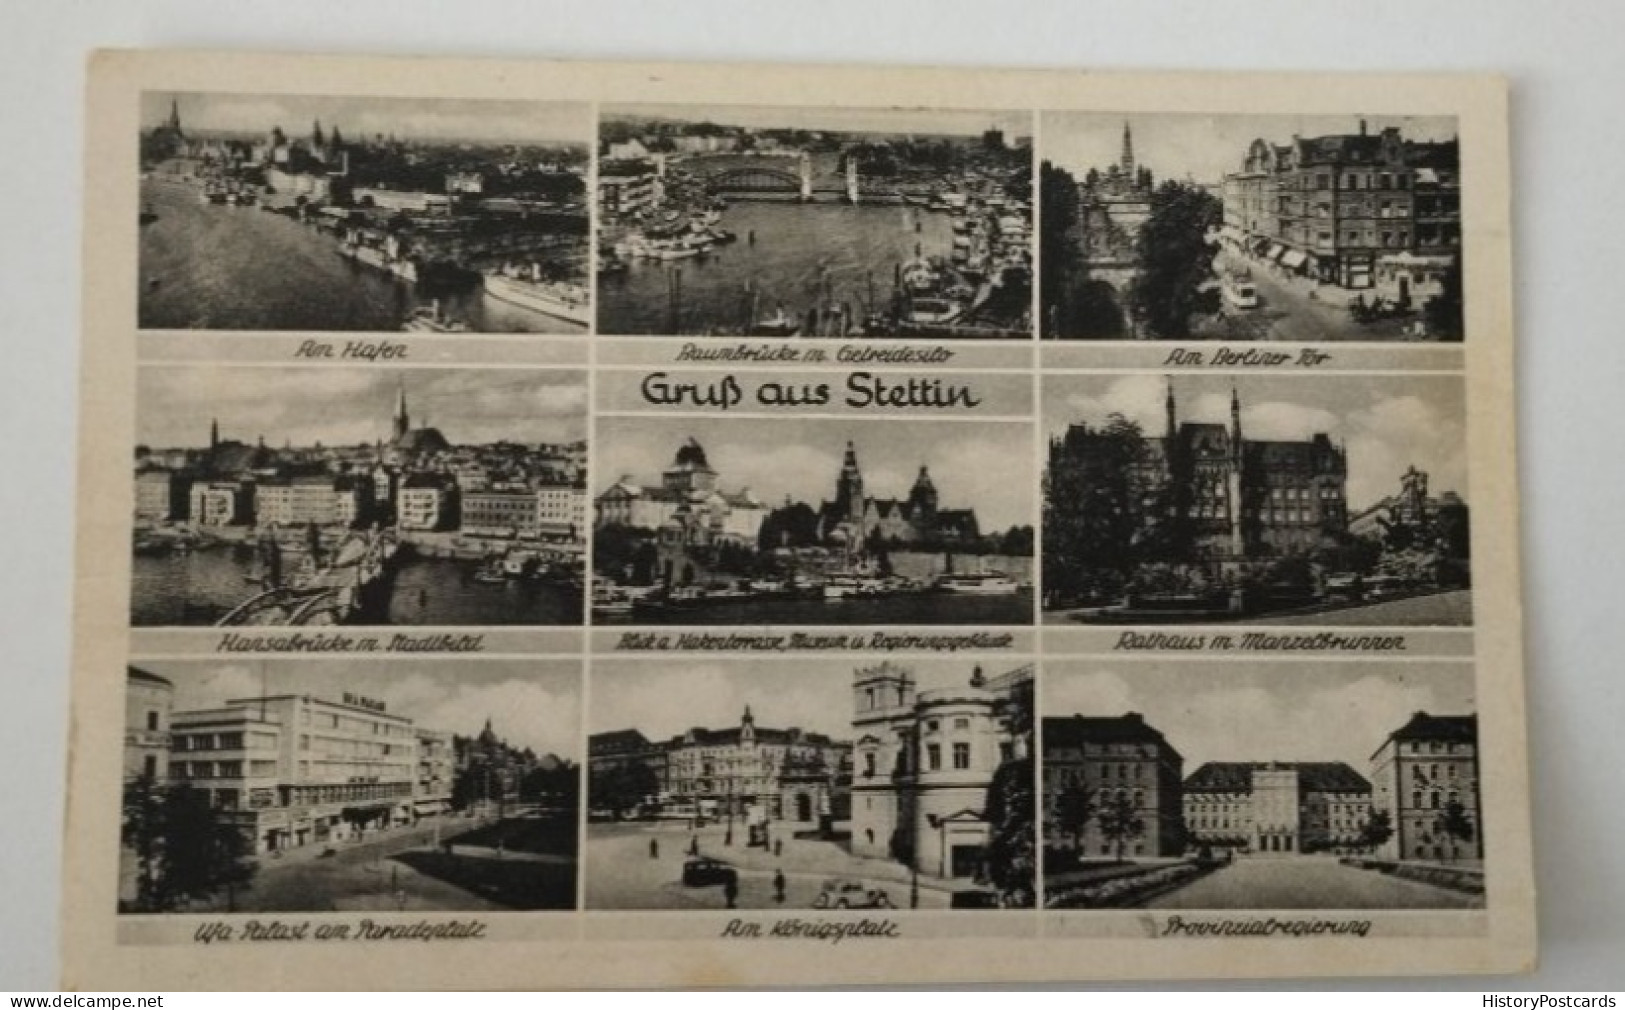 Gruß Aus Stettin, Szczecin, 9x Bild AK, 1935 - Pommern